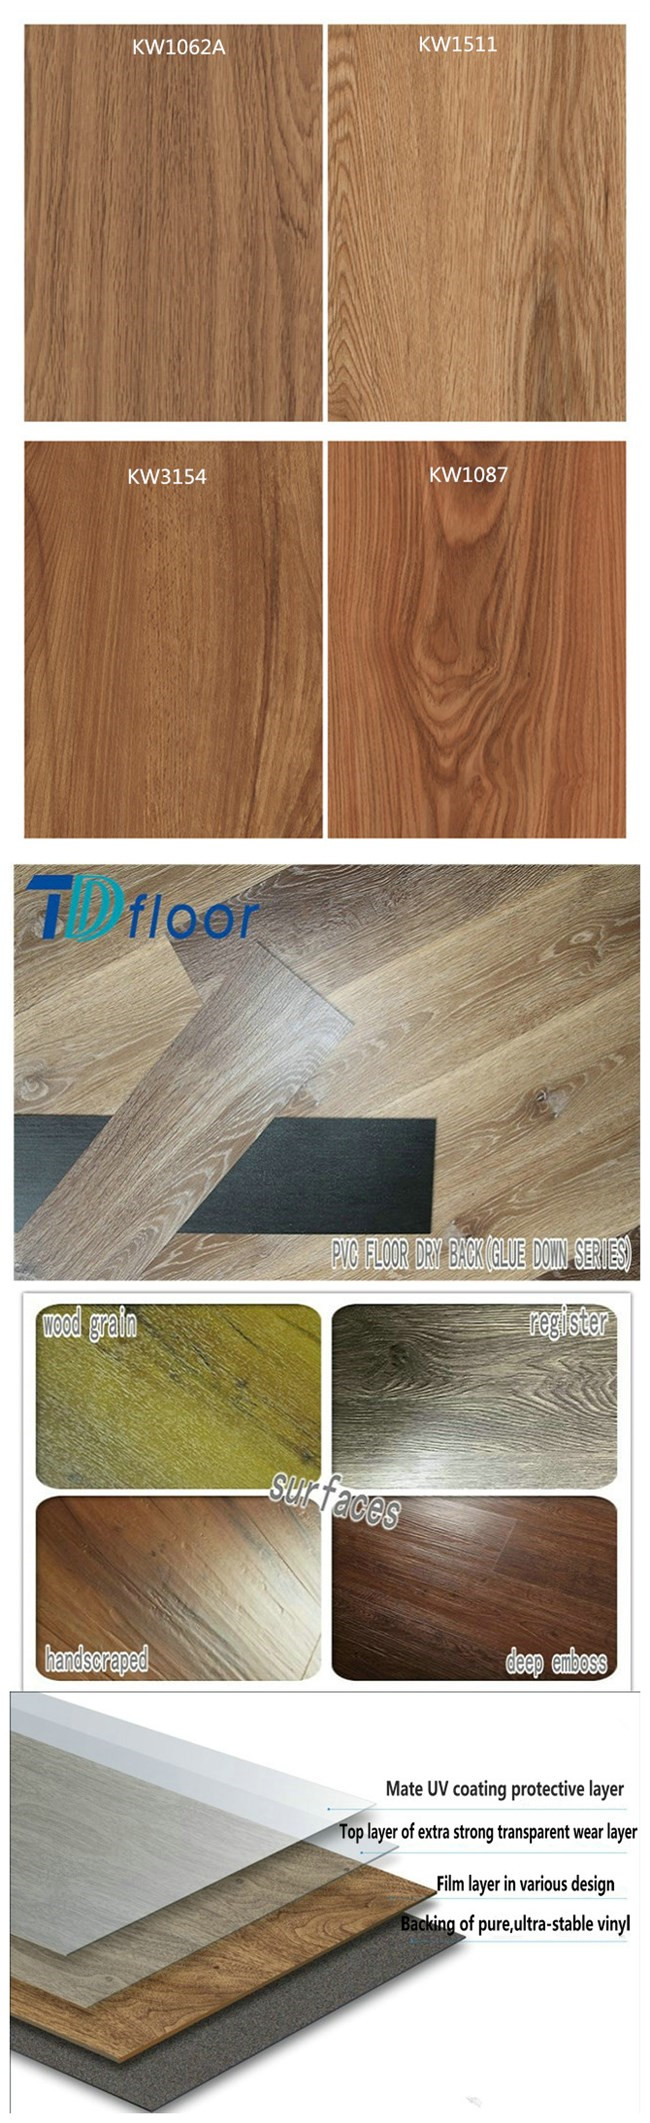 Wooden Virgin Glue Down Cheep Cost PVC Vinyl Floor